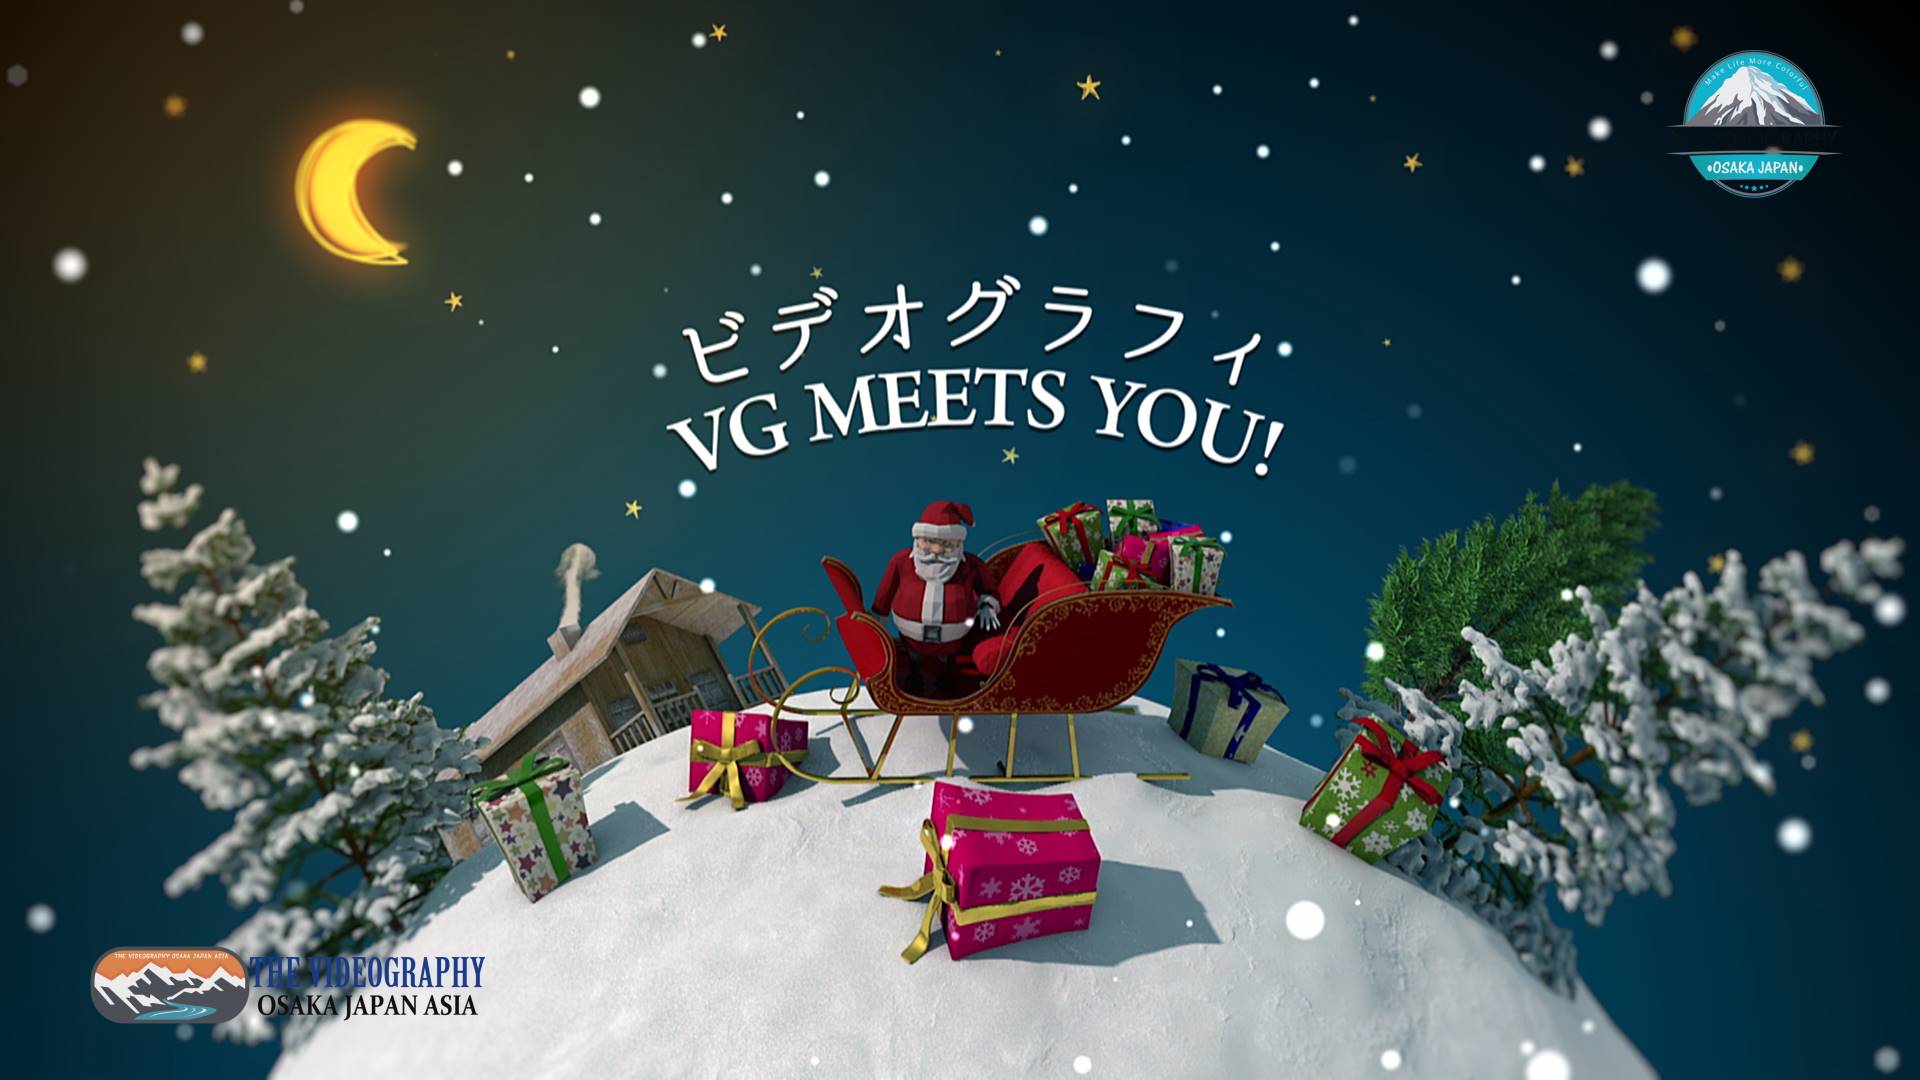 クリスマス・オープニングムービー@デジタルサイネージ動画広告